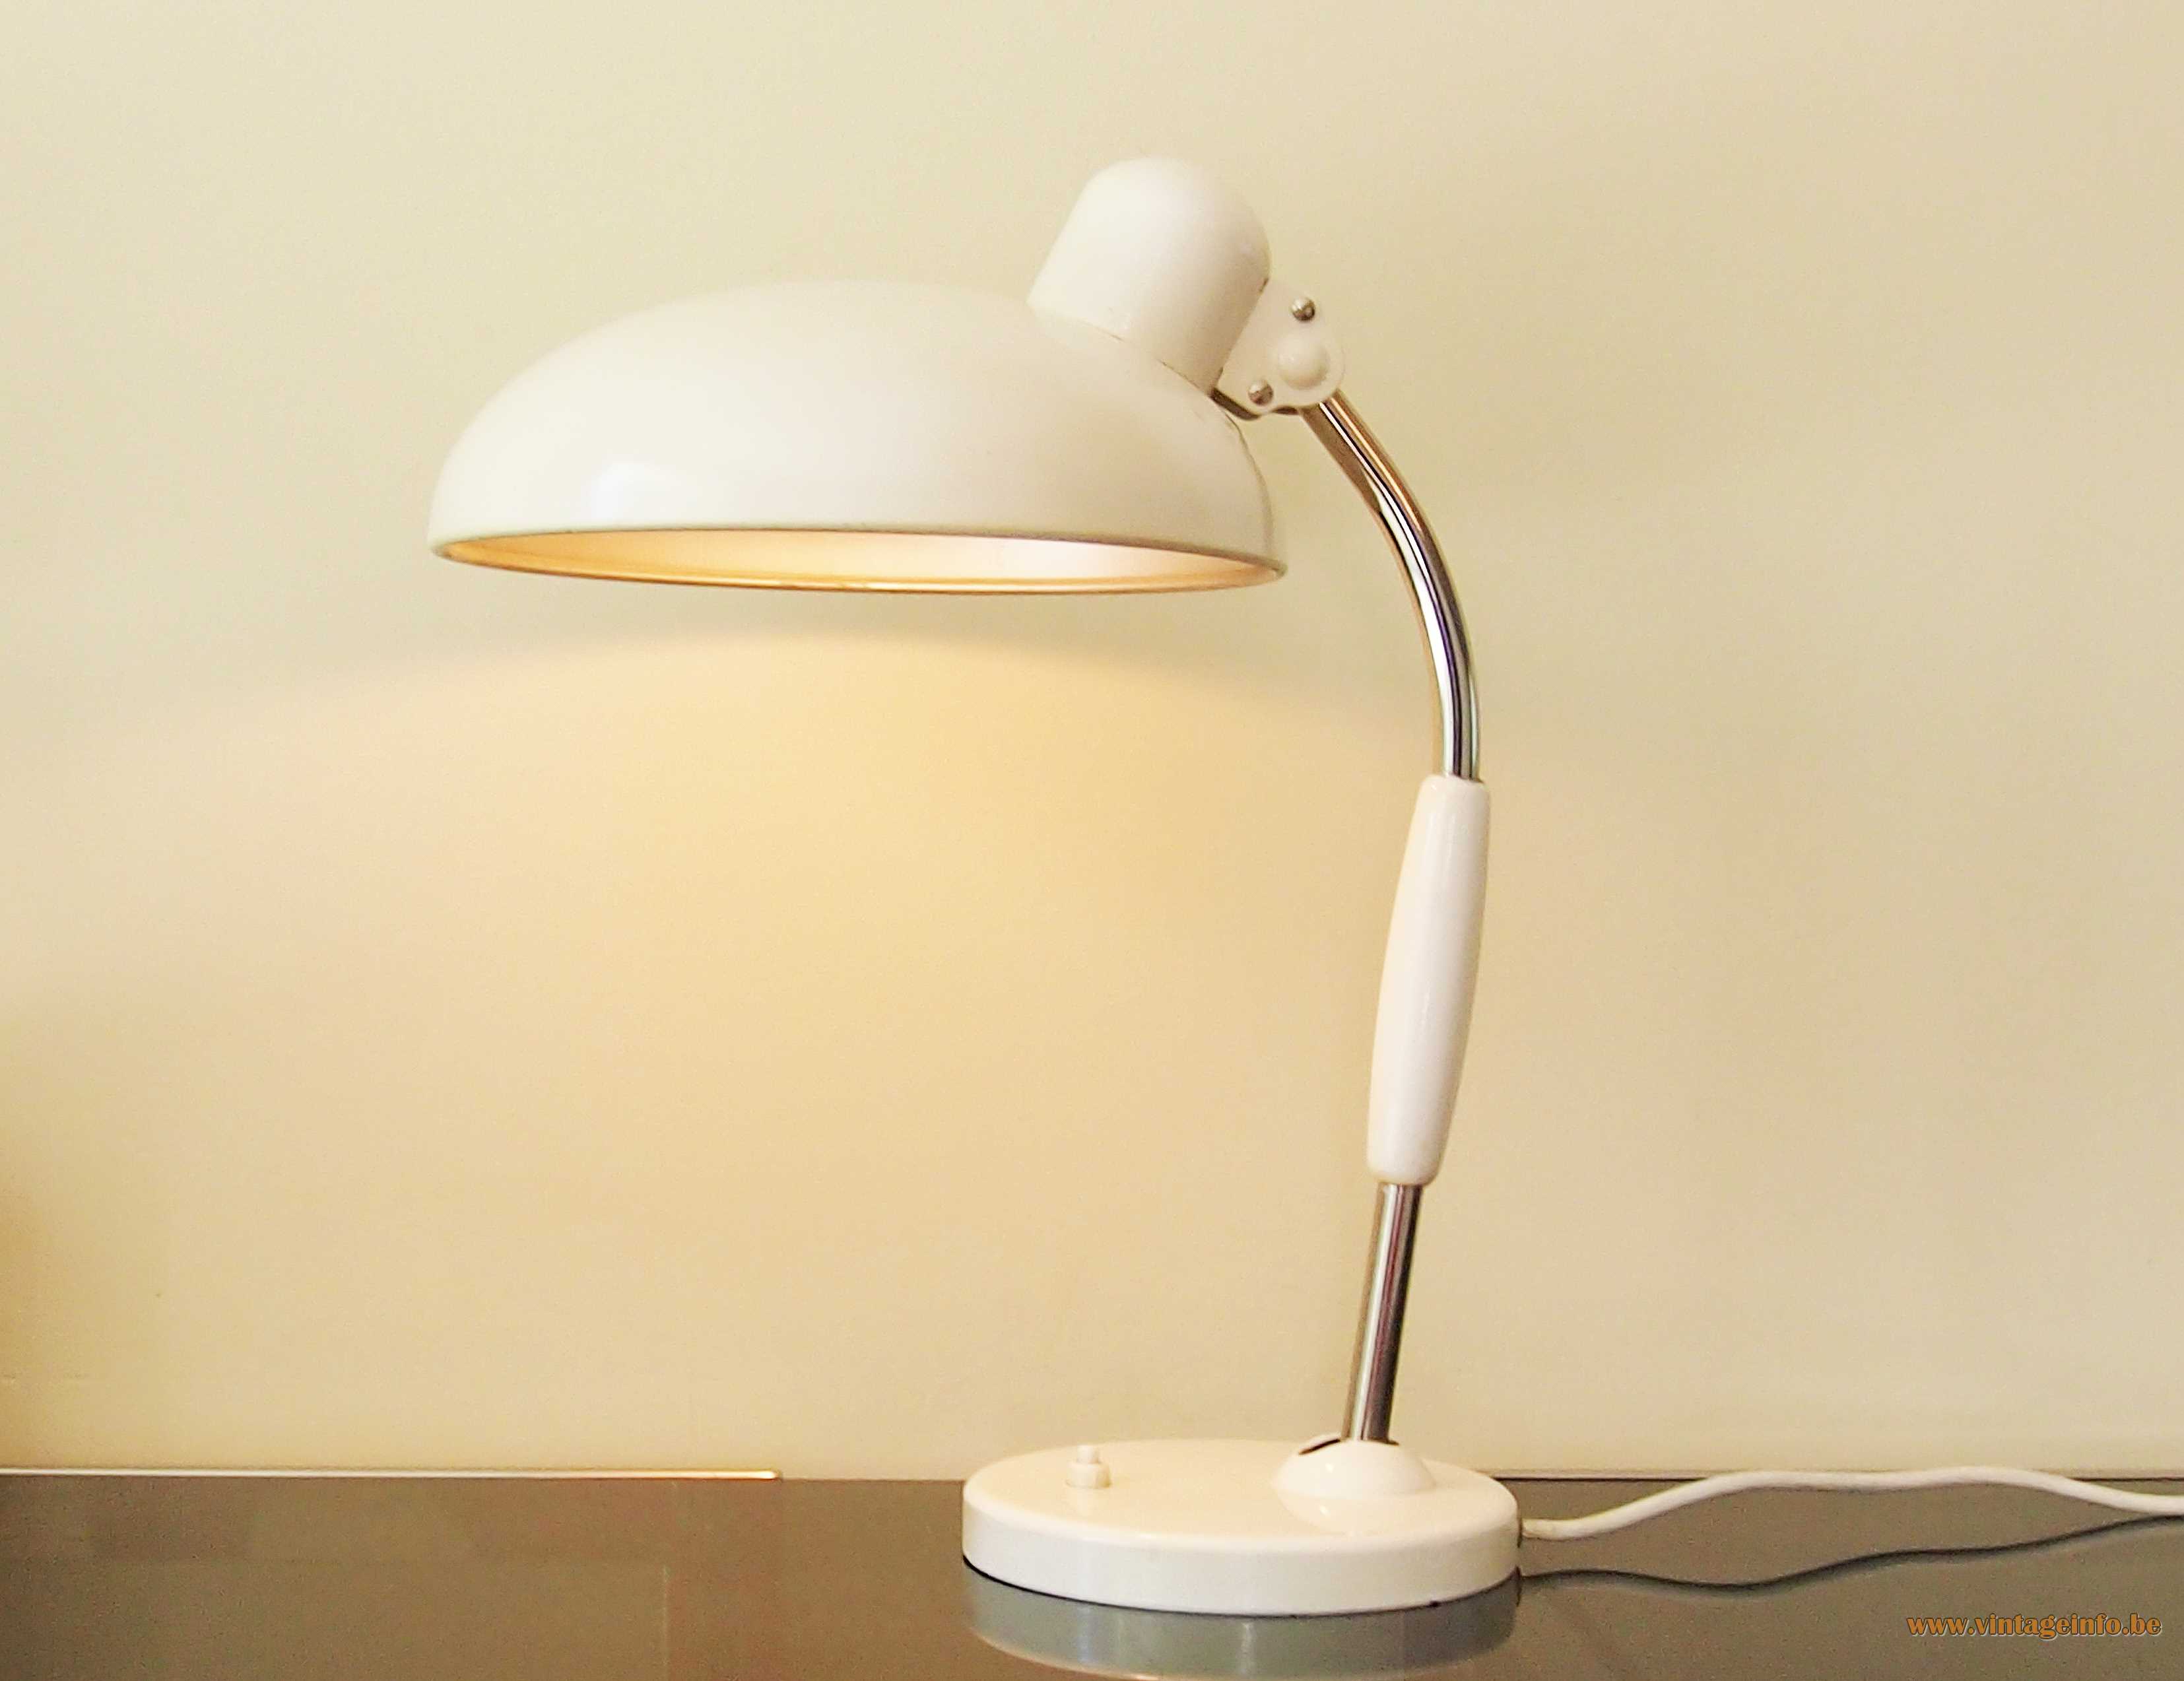 Christian Dell Koranda desk lamp 1933 design white metal base & lampshade chrome rod 1960s 1970s Austria